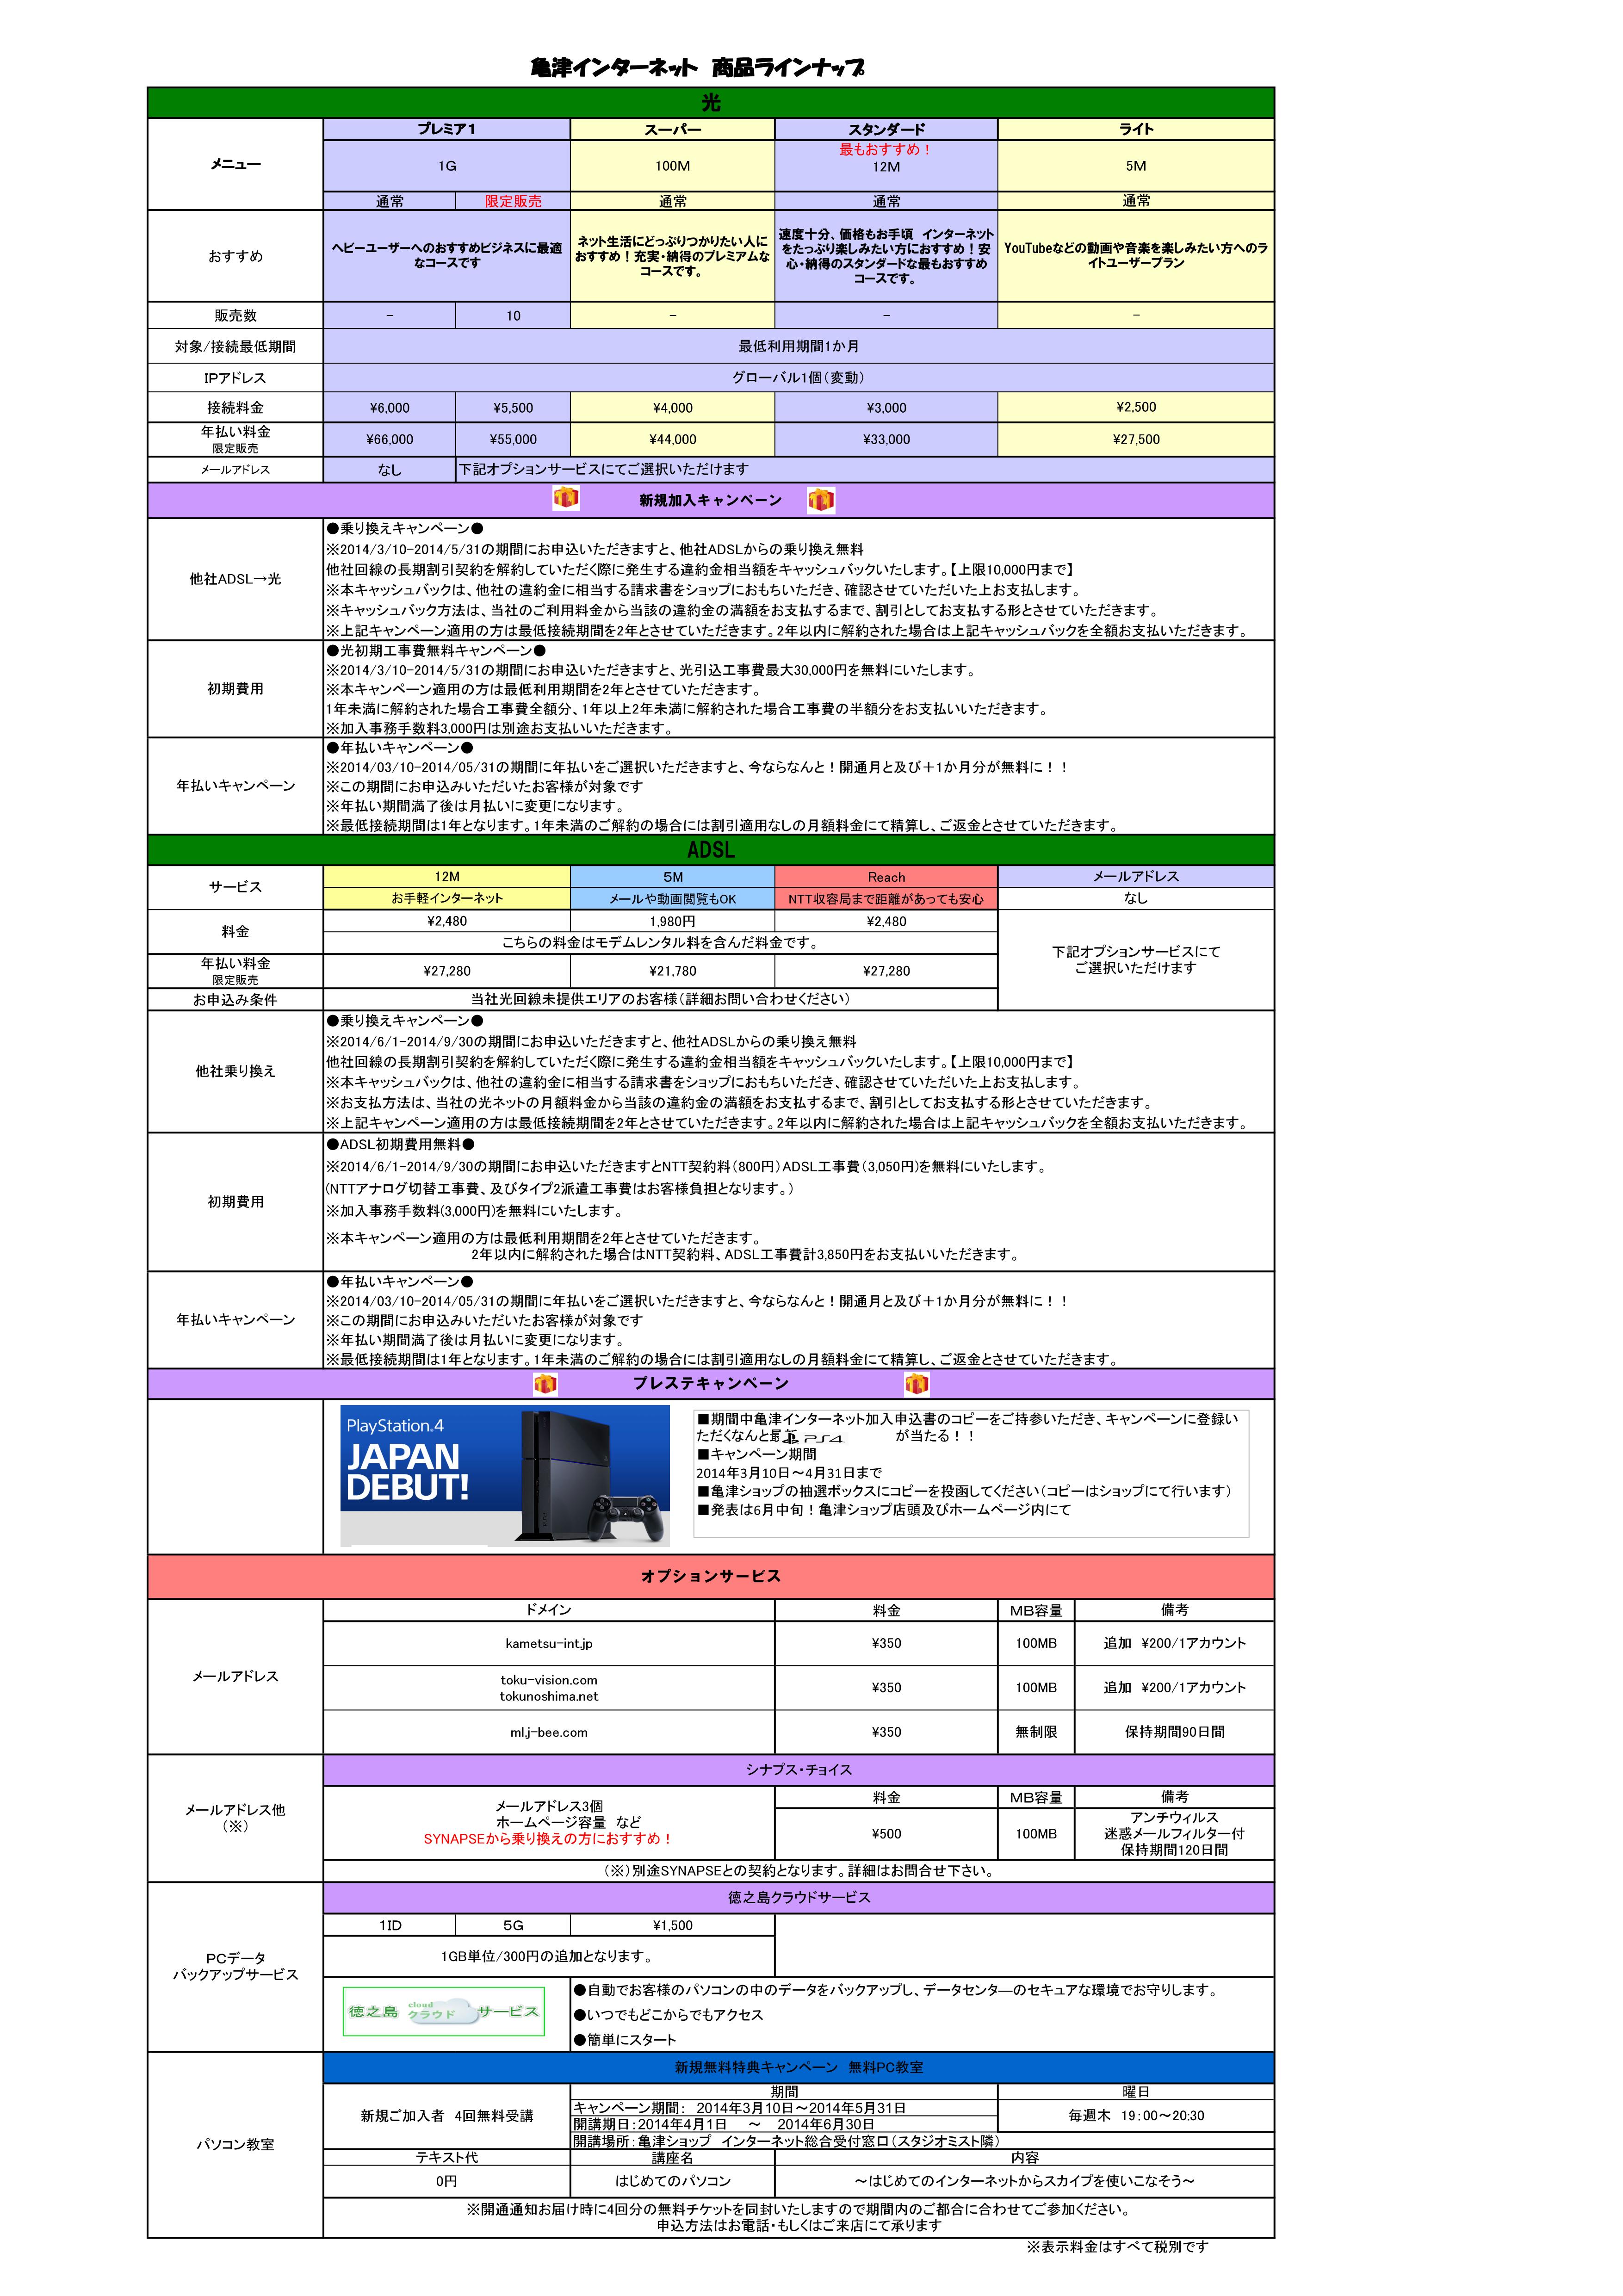 亀津インターネット商品ラインナップ（料金表）